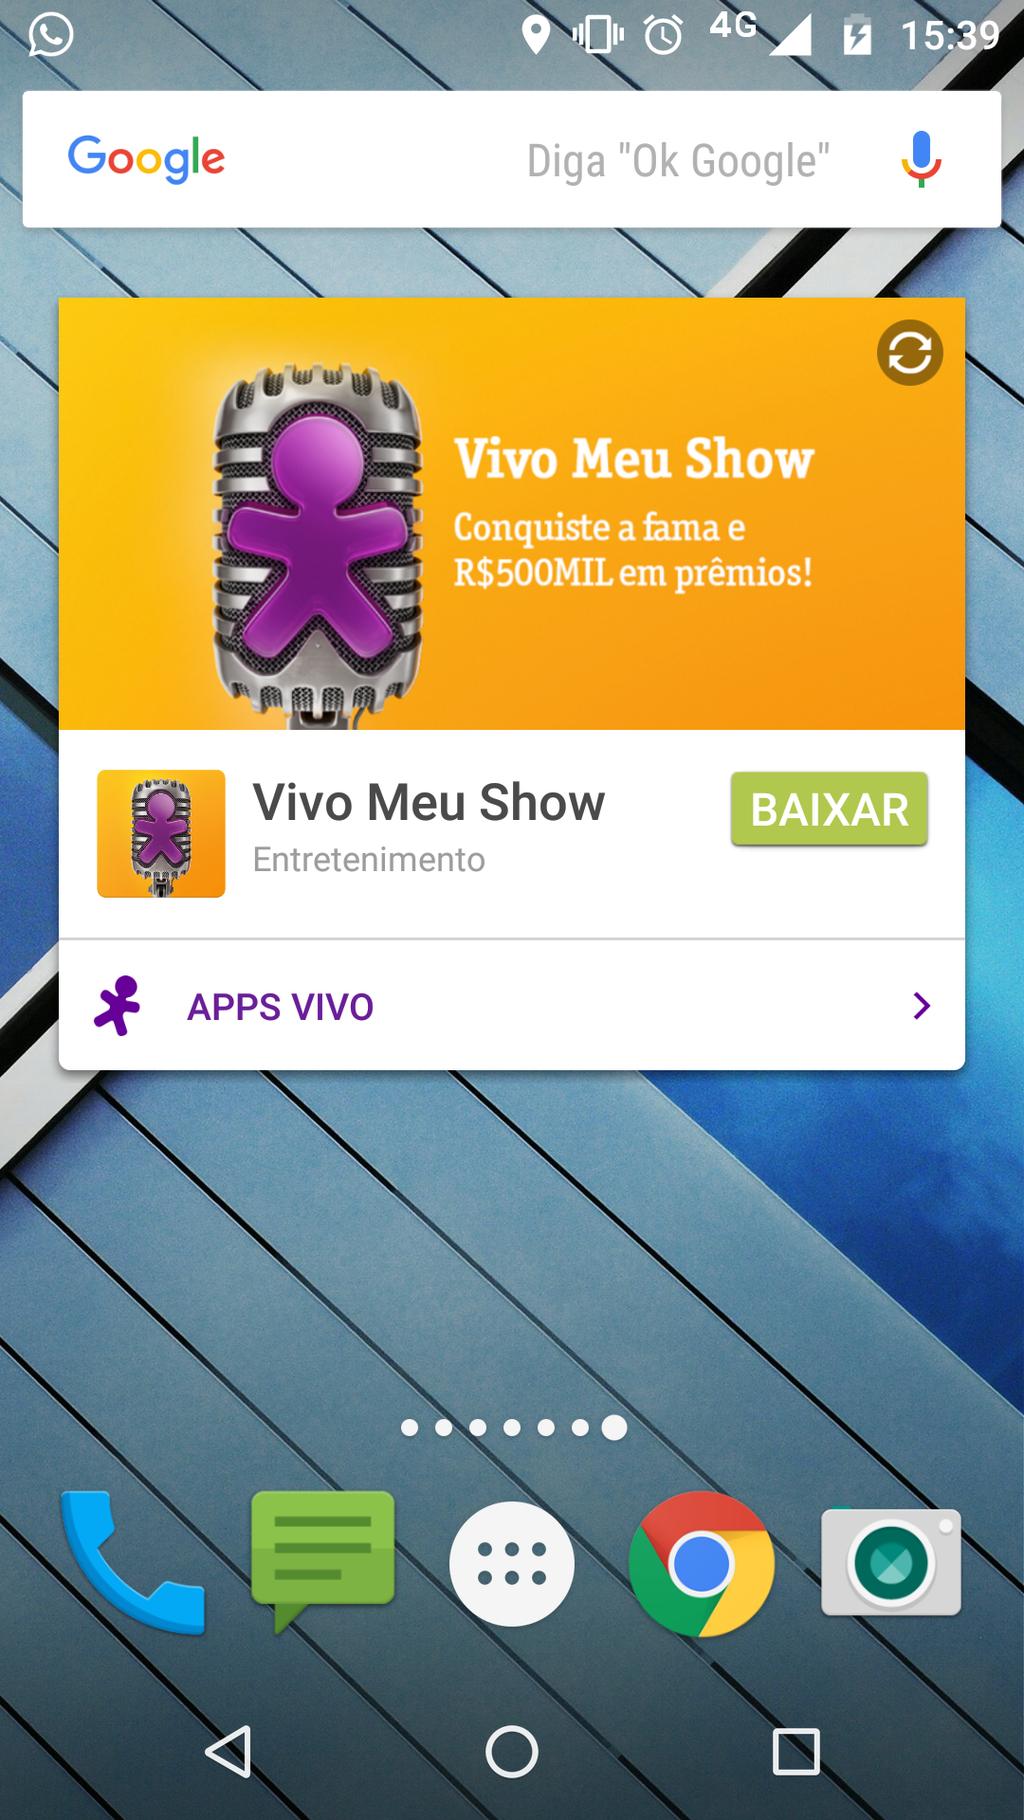 WIDGET Os celulares vendidos pela Vivo possuem um widget na tela inicial, que oferece dicas de apps e sites relevantes para o usuário.